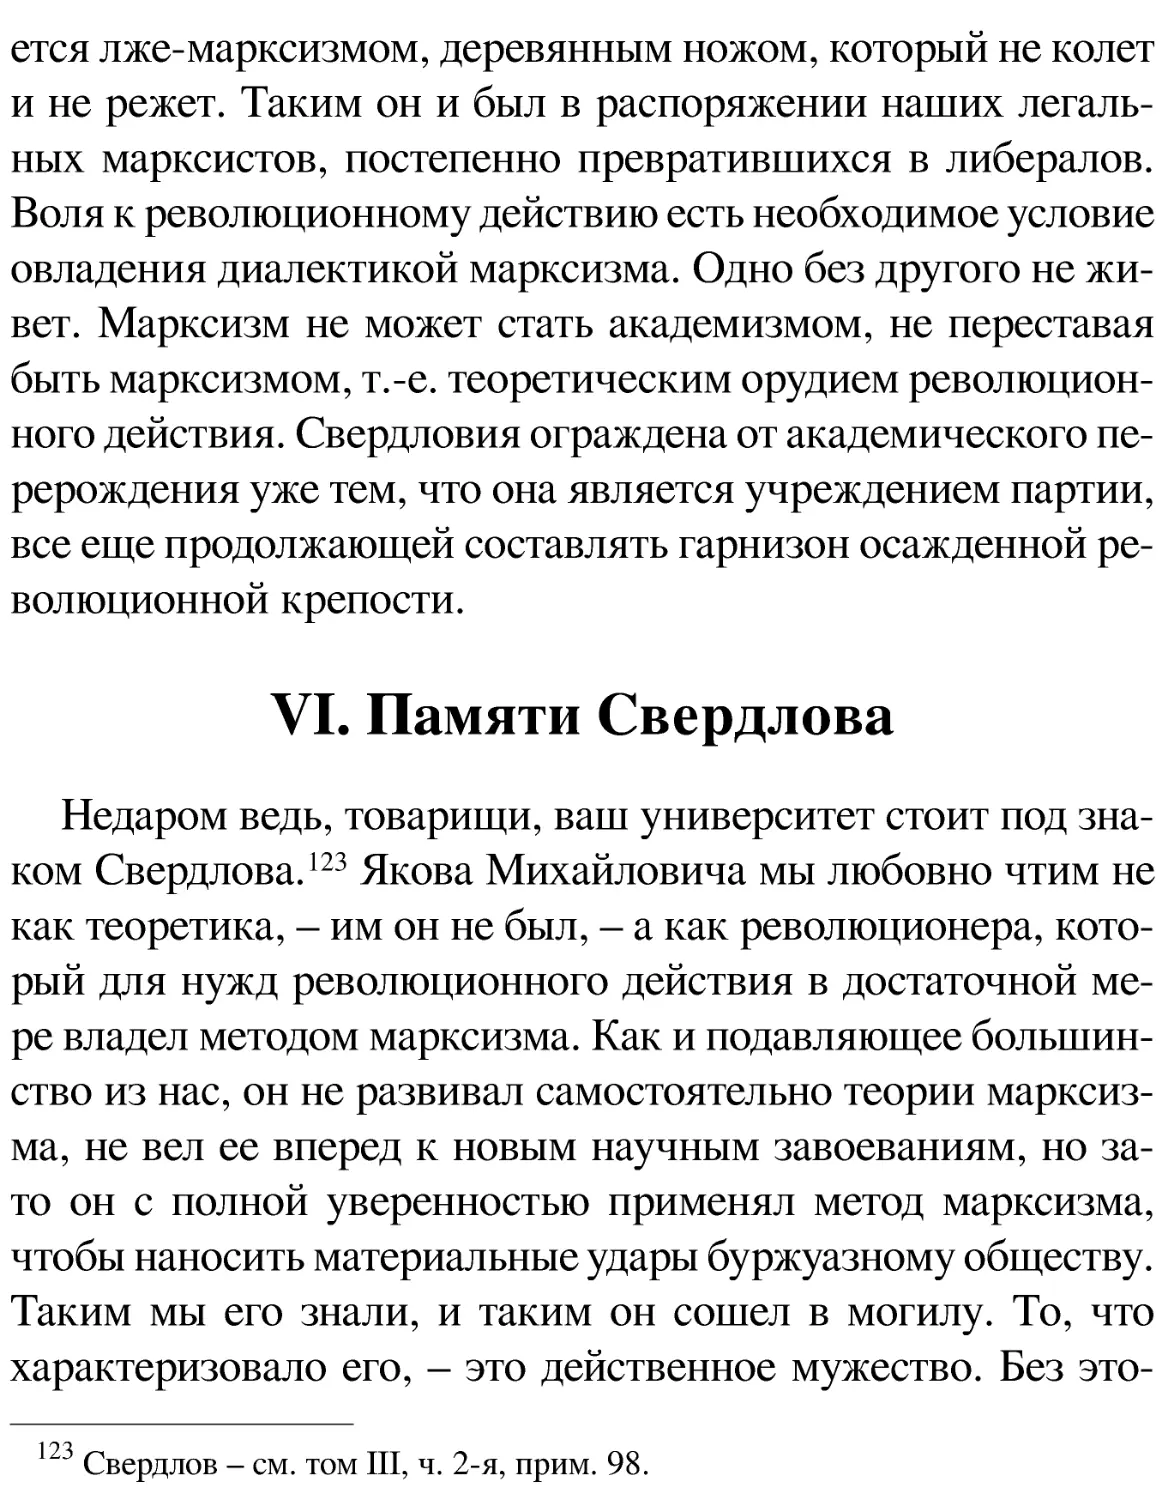 VI. Памяти Свердлова